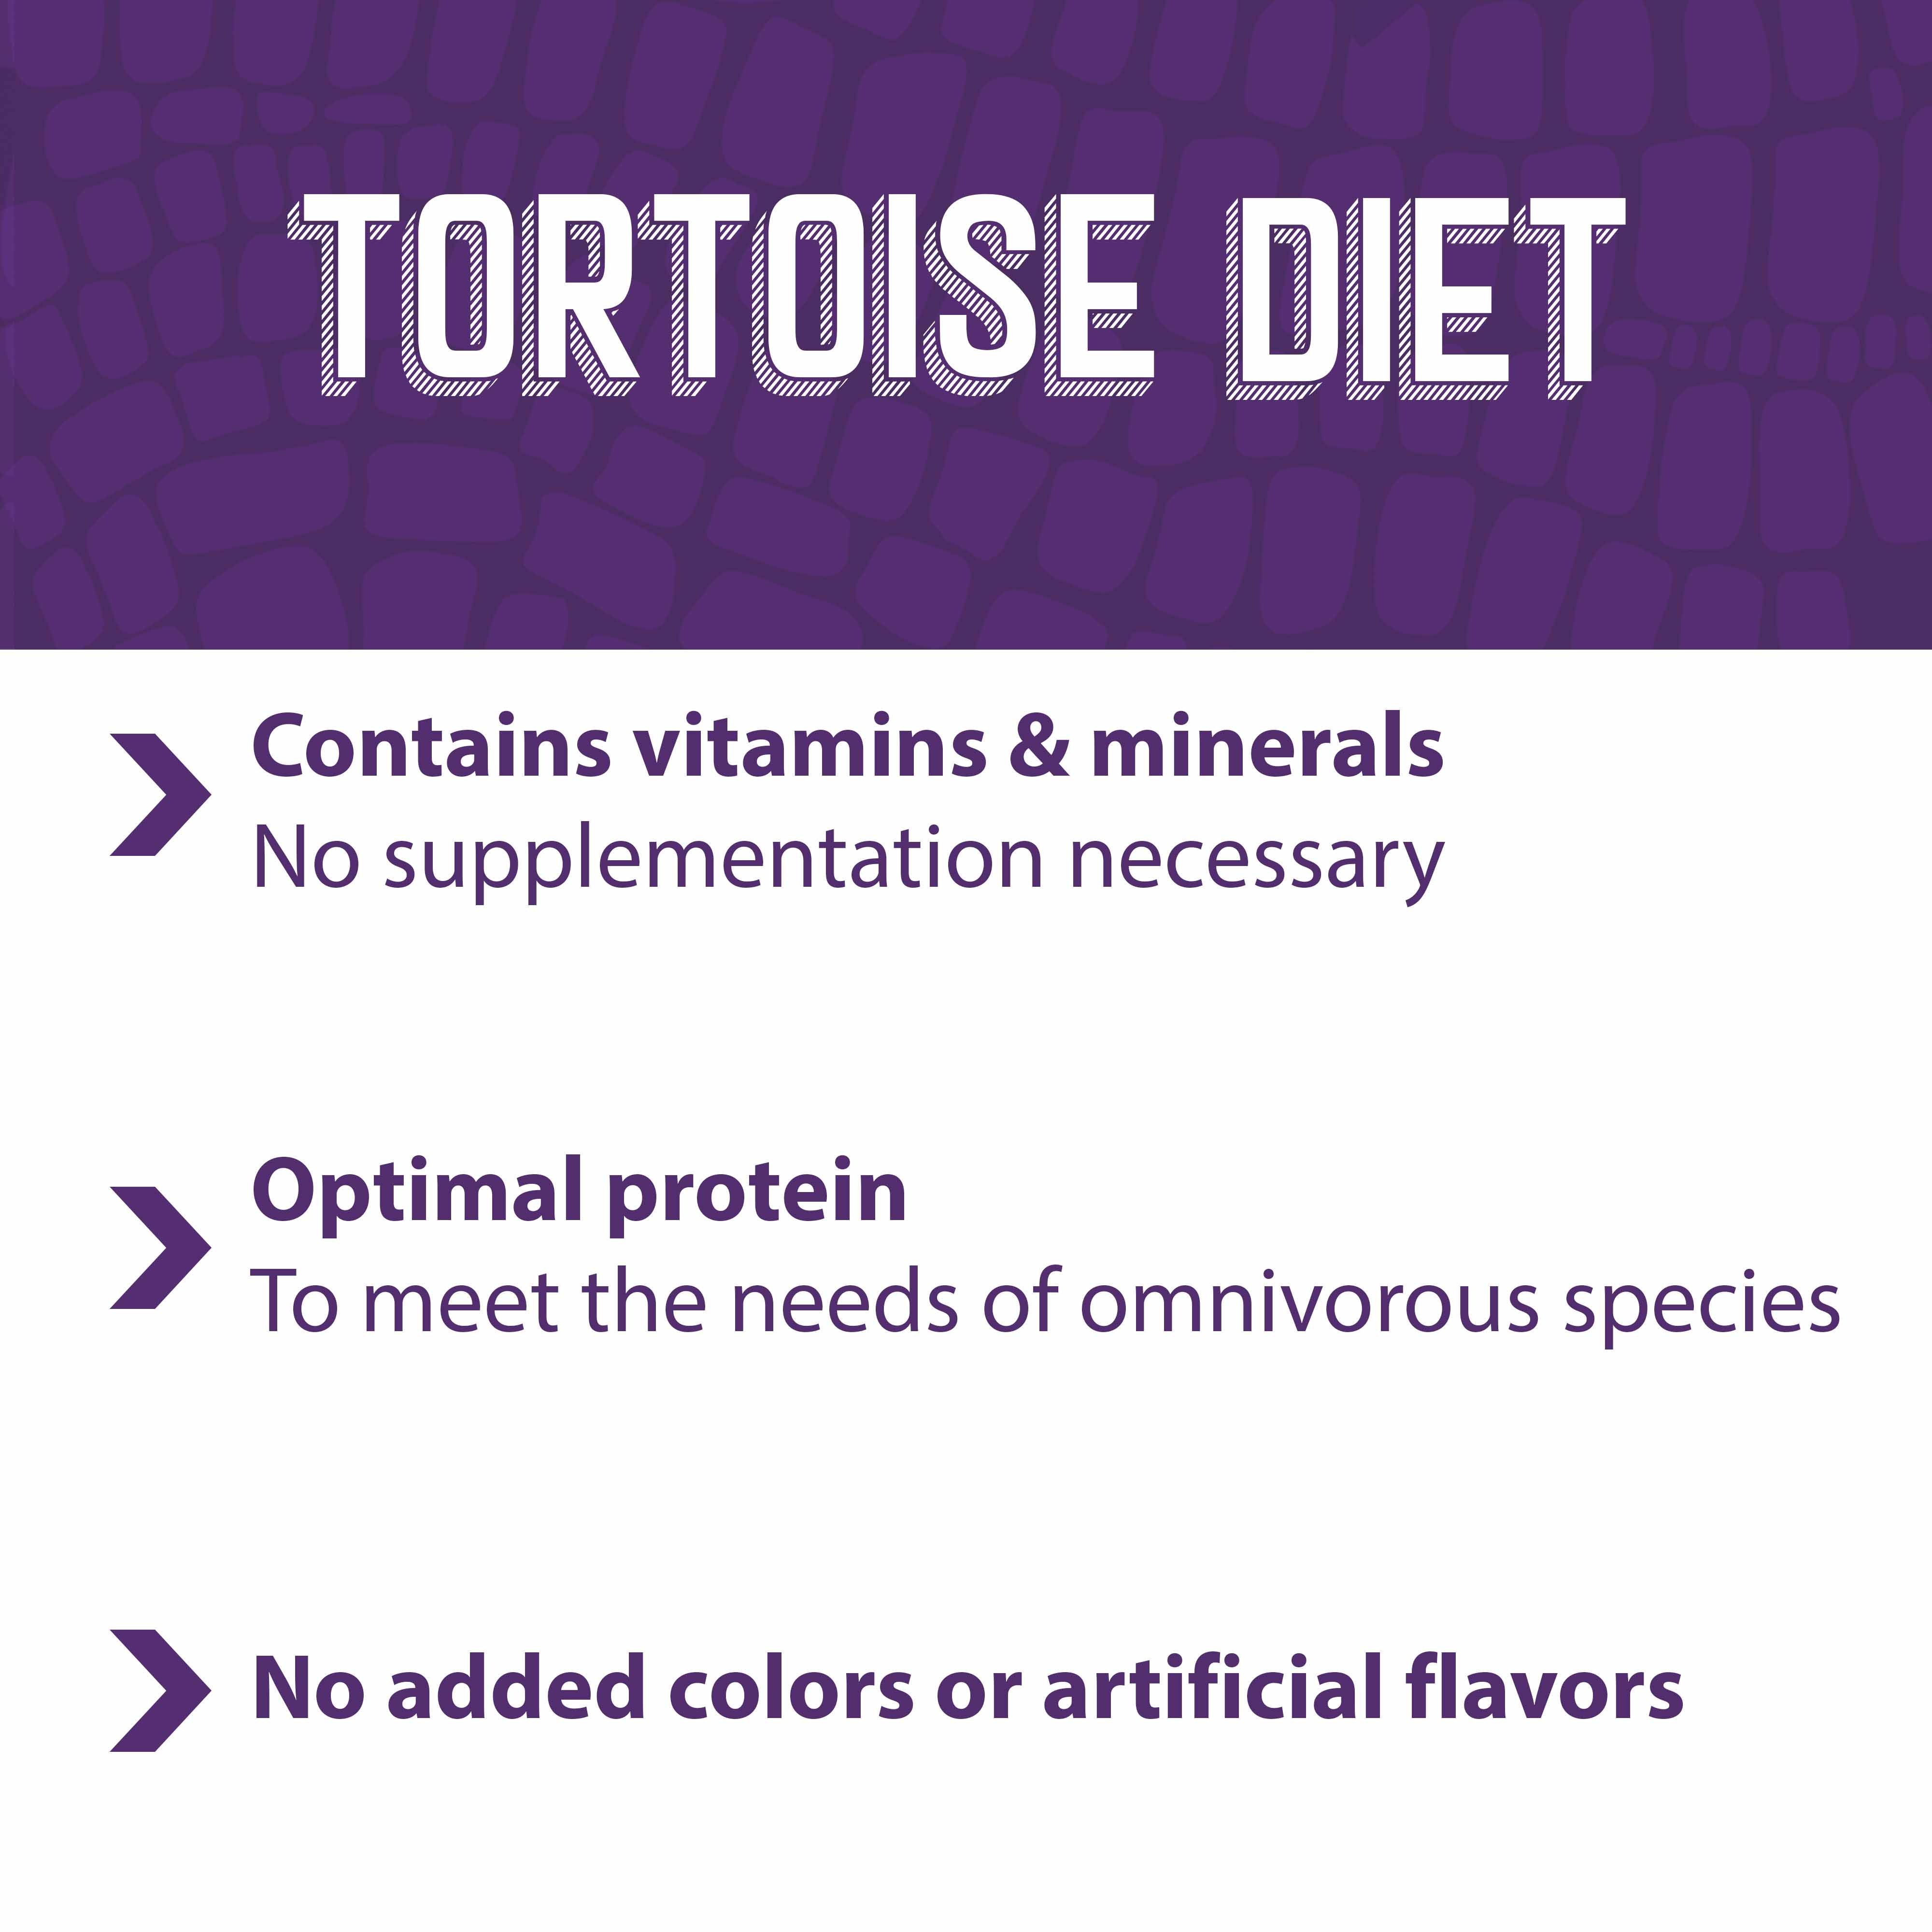 Mazuri tortoise diet contains vitamins and minerals